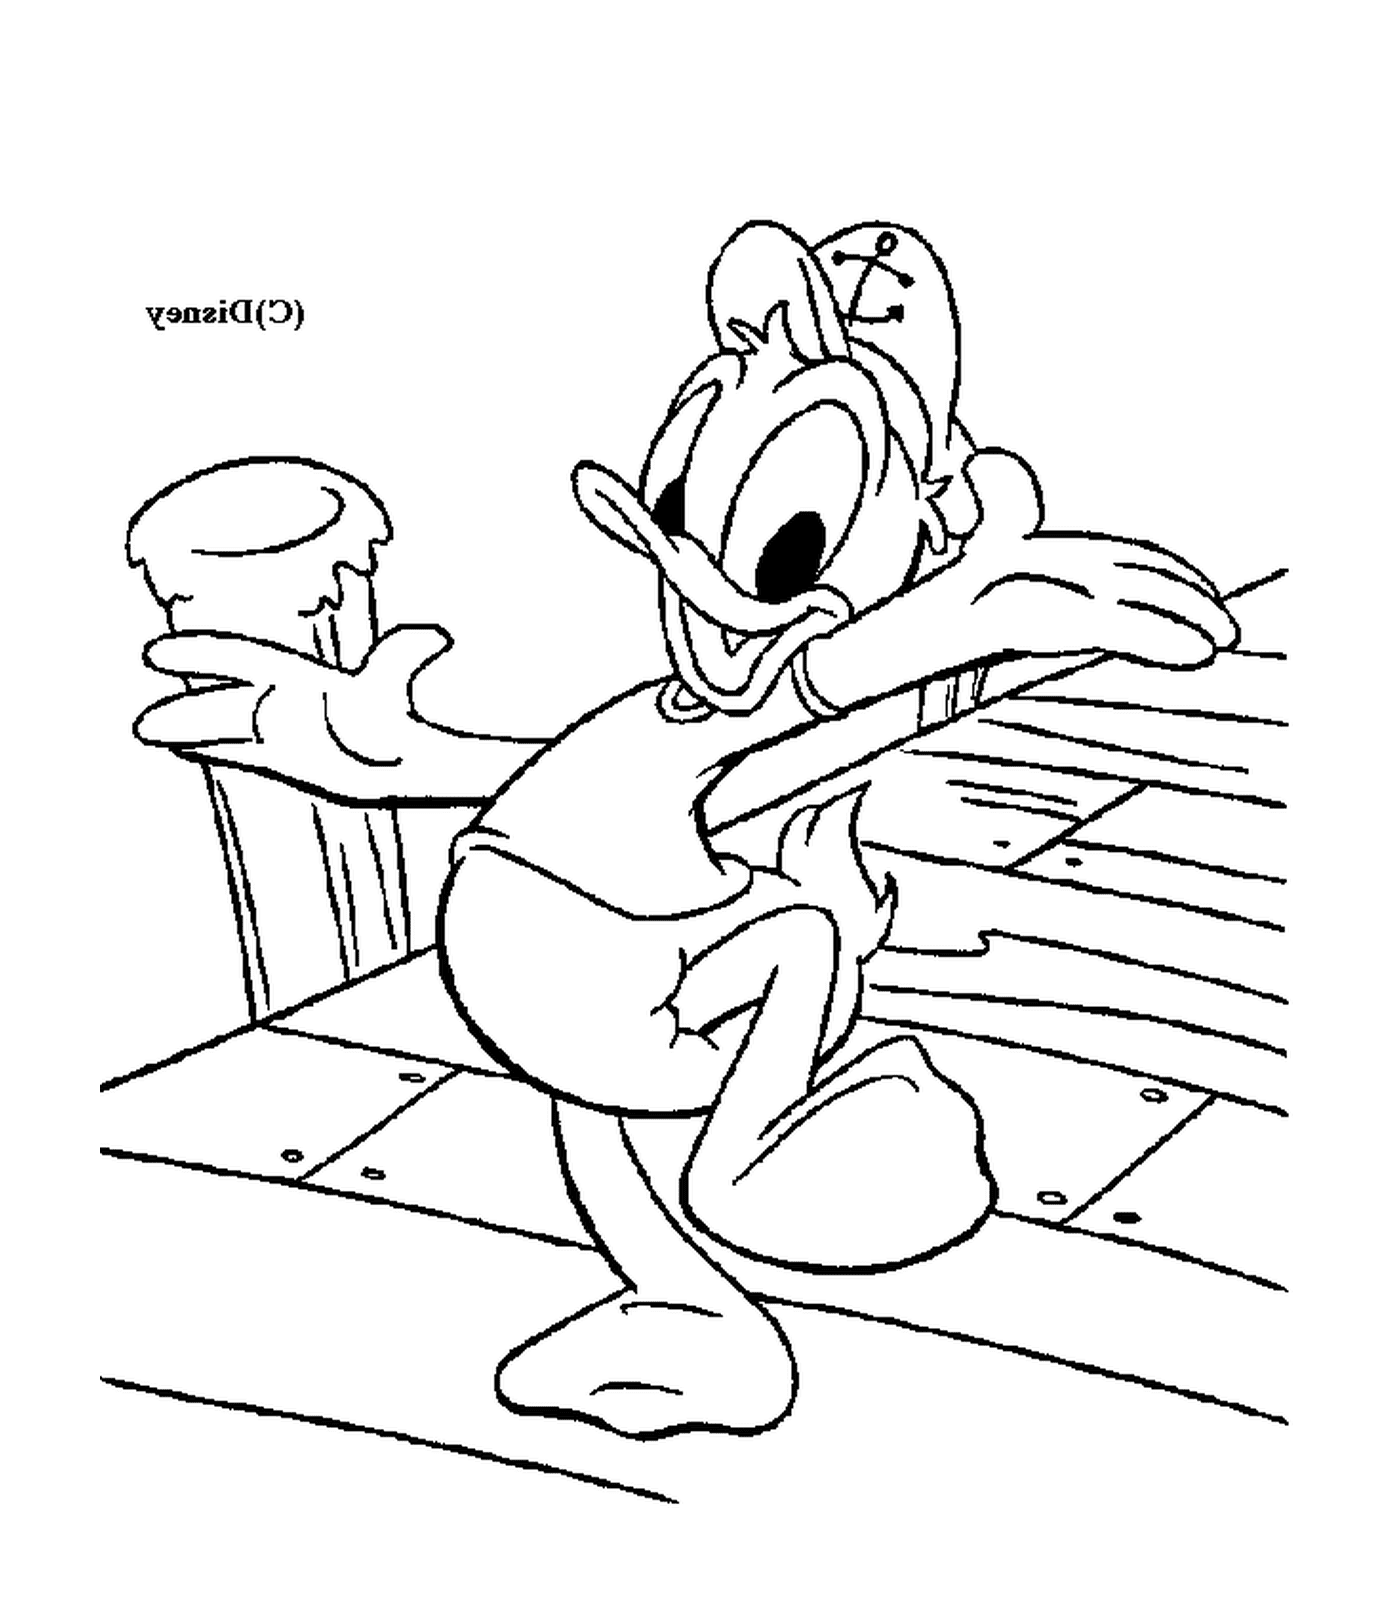  Donald, un marinaio seduto su una panchina 